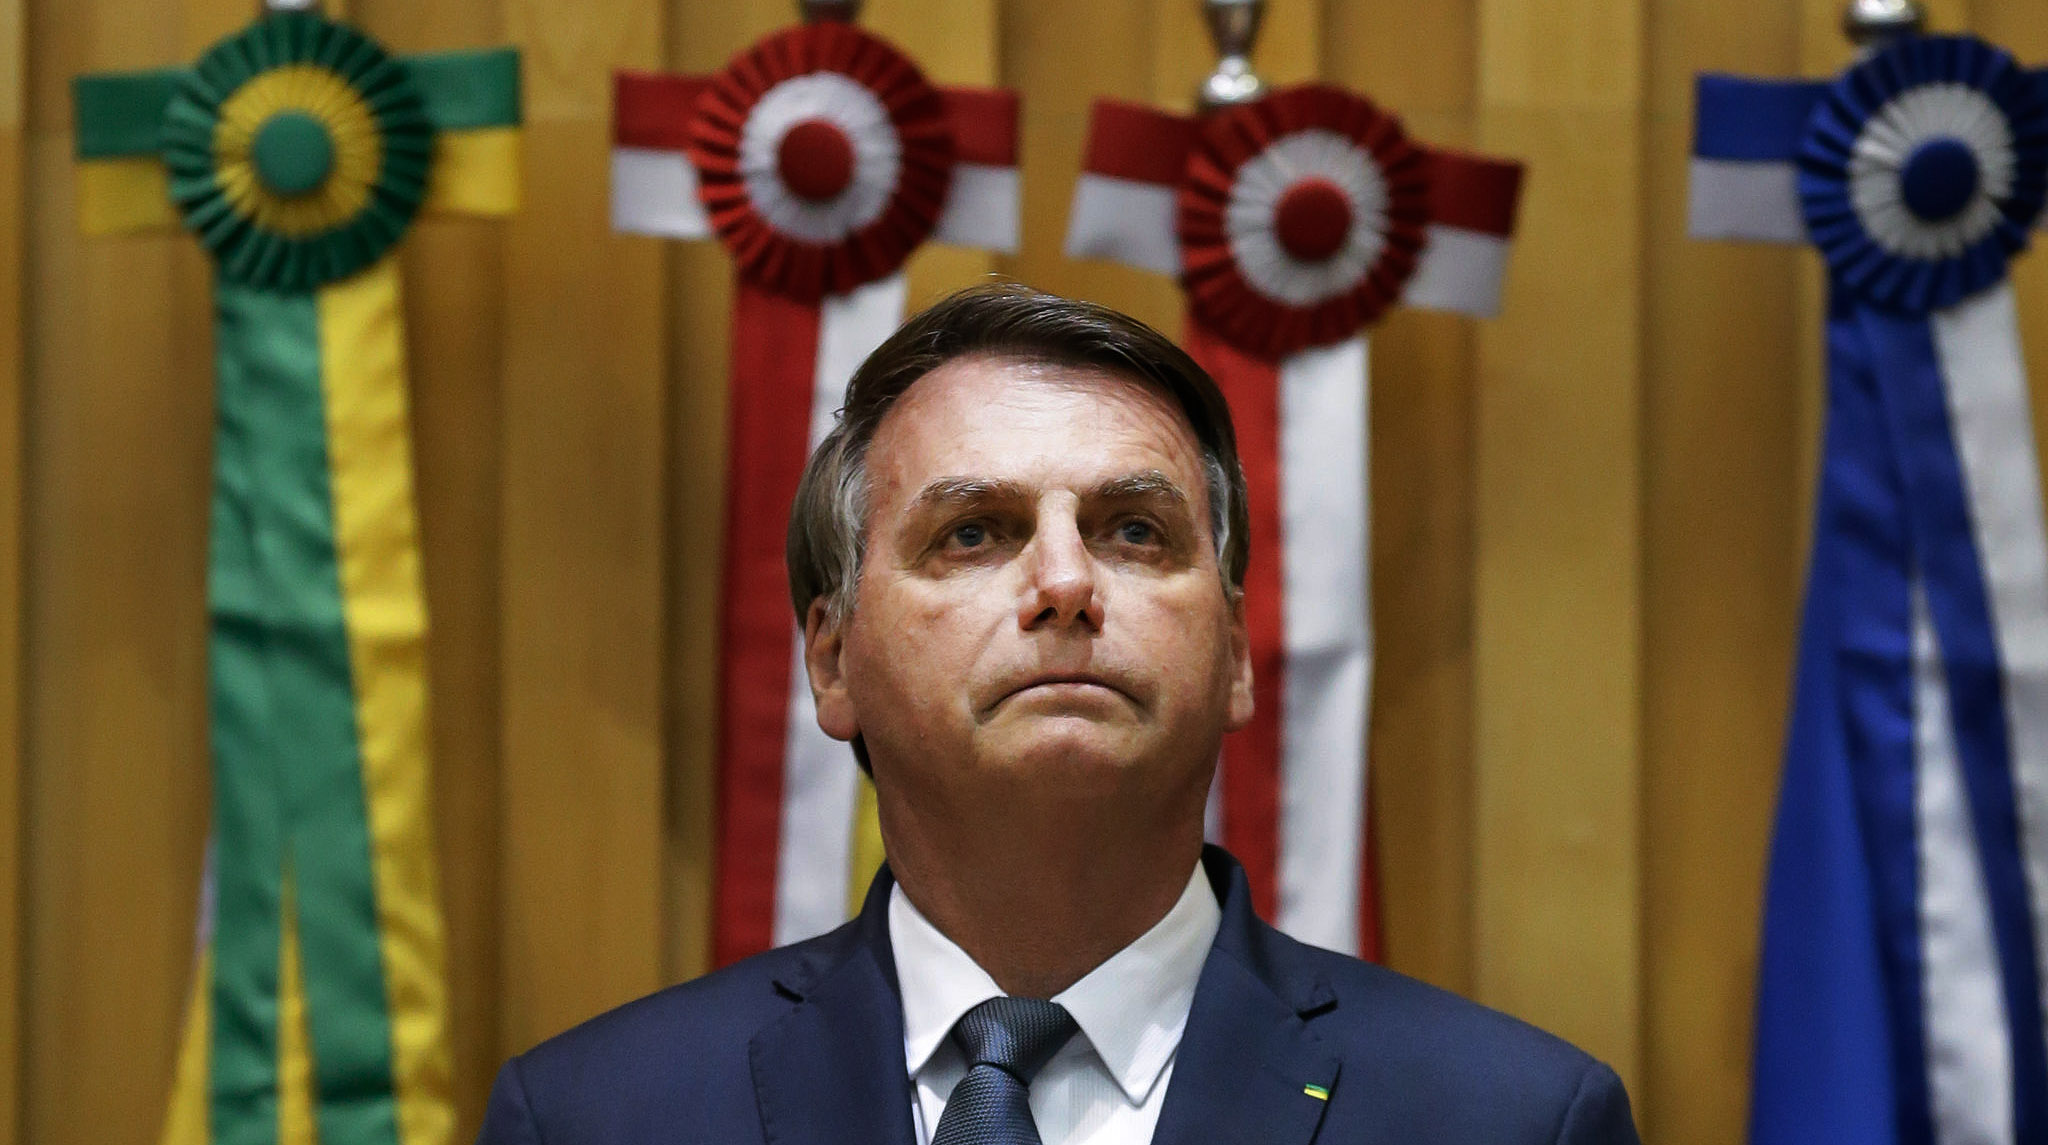 (Brasília - DF, 19/02/2020) Presidente da República, Jair Bolsonaro durante Sessão Solene de posse dos novos dirigentes do Tribunal Superior do Trabalho e do Conselho Superior de Justiça do Trabalho.

Foto: Carolina Antunes/PR